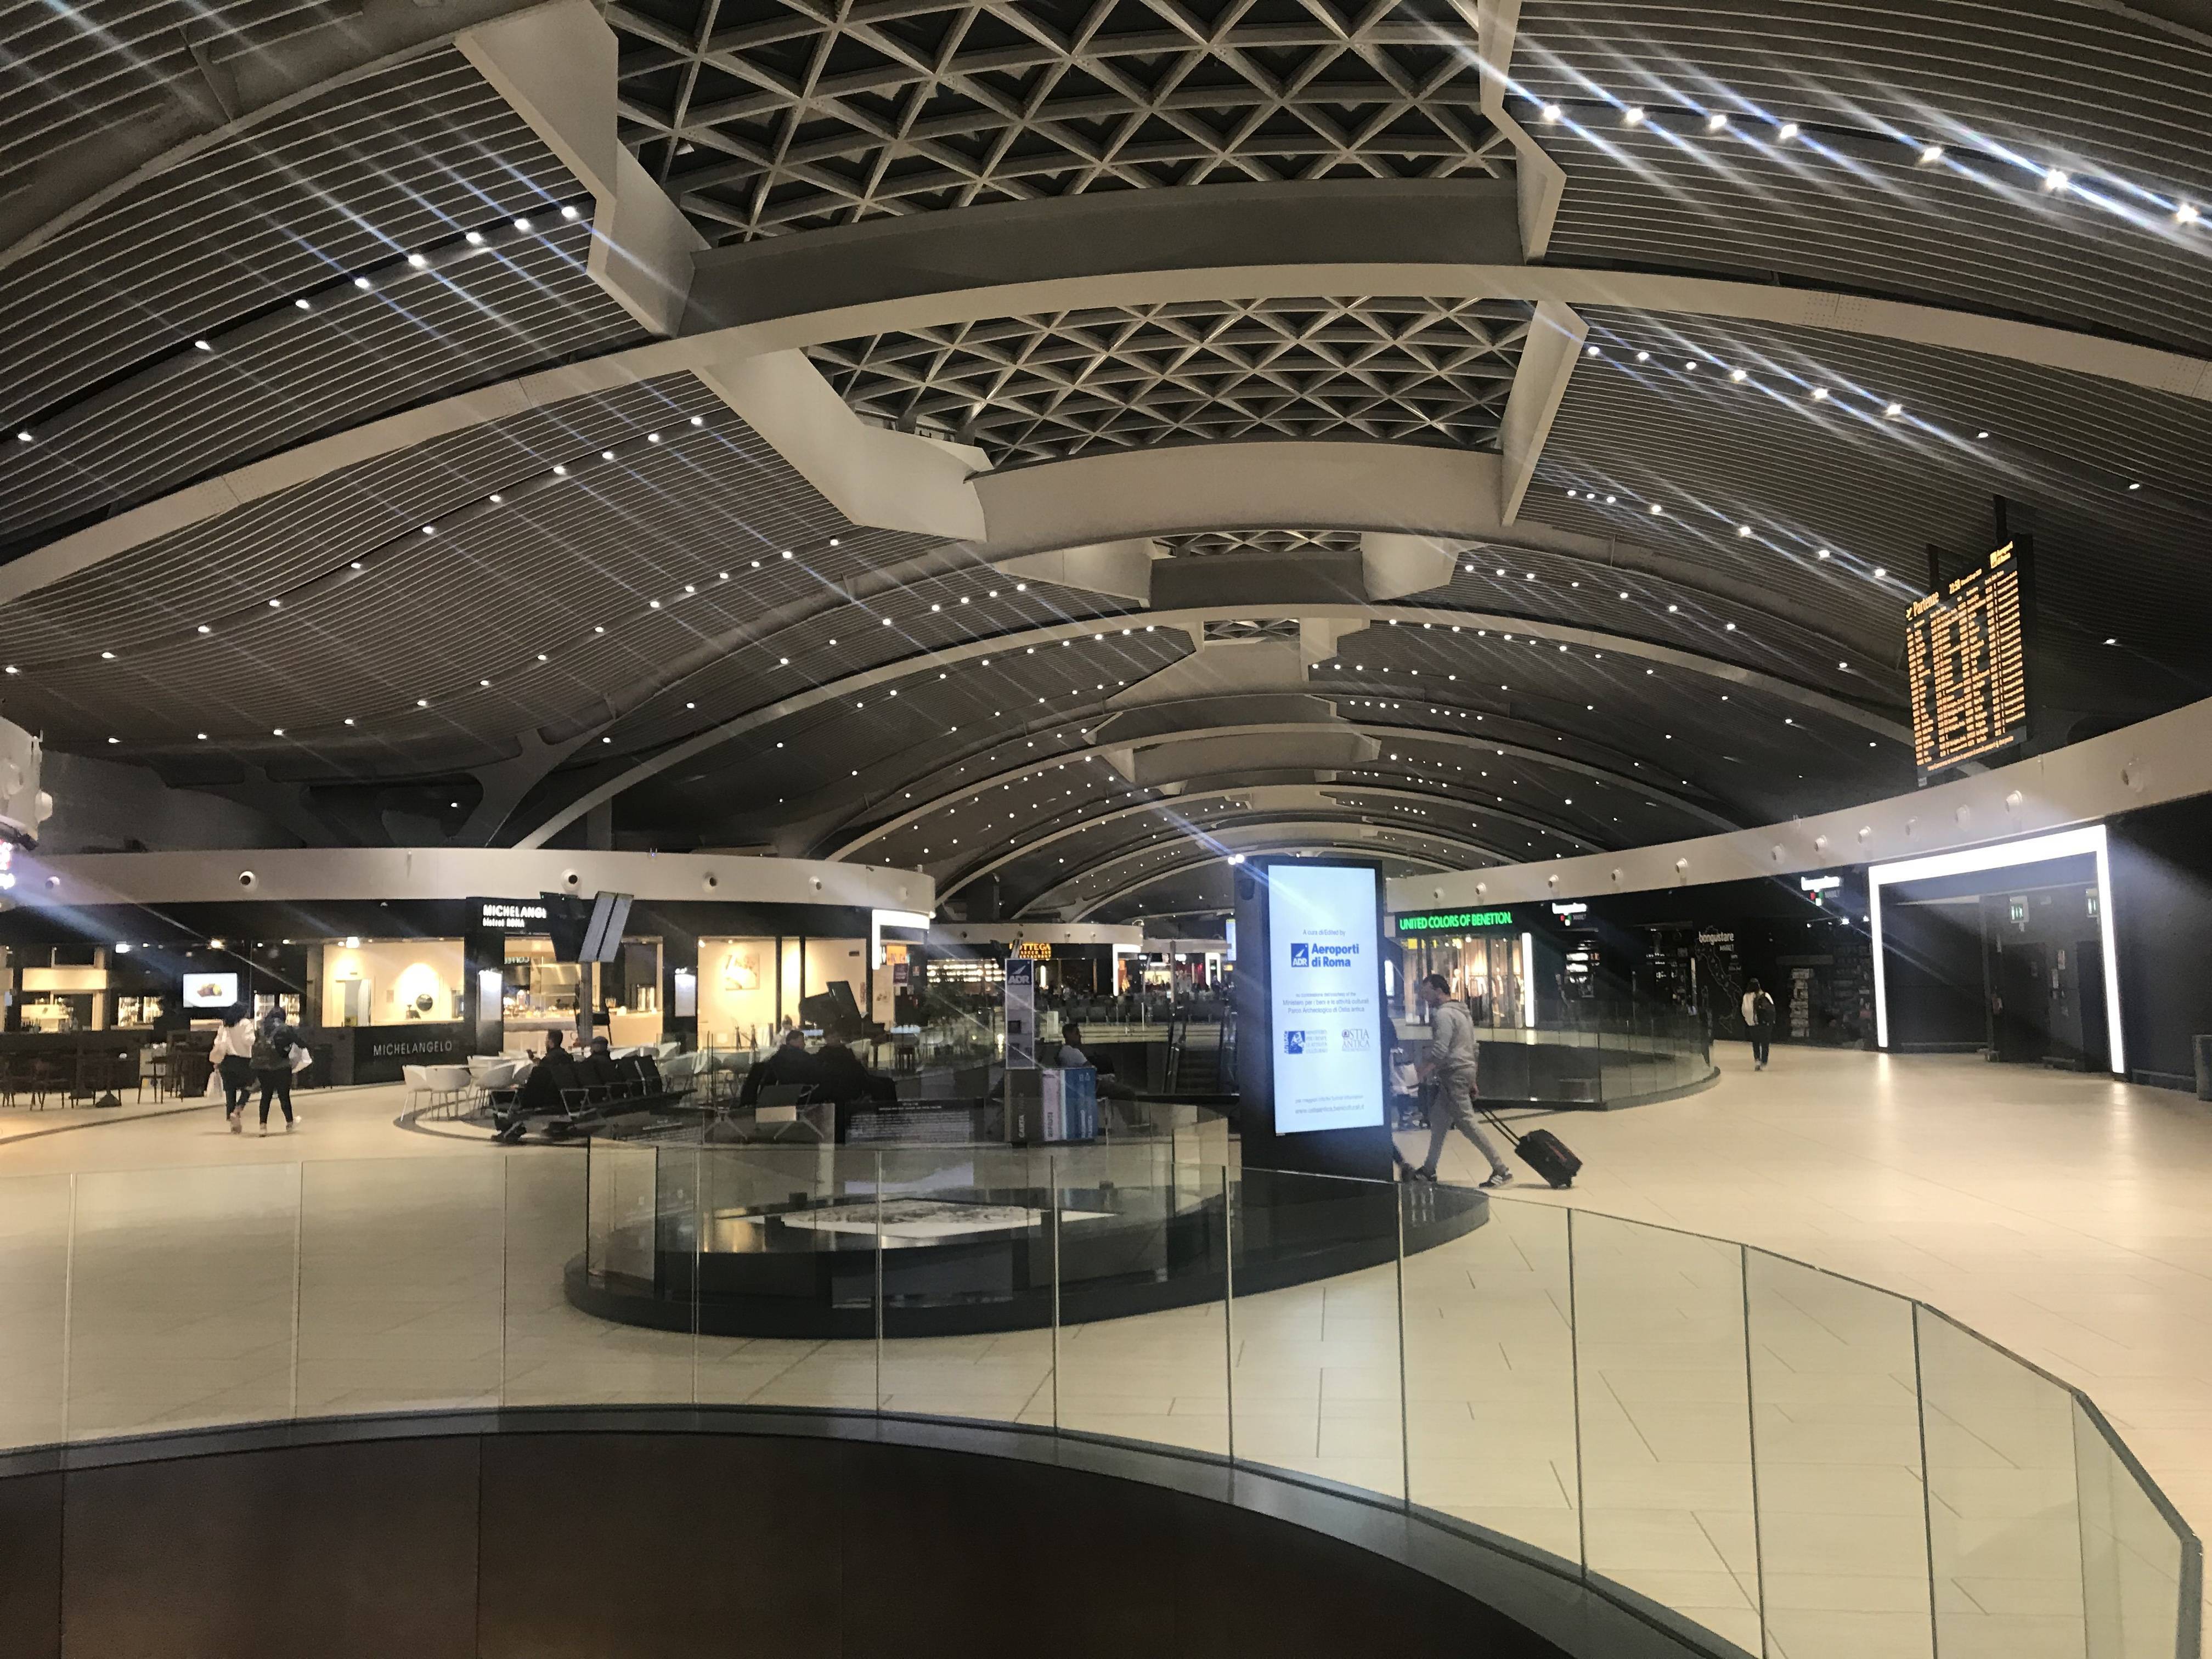 Инфраструктура аэропорта фьюмичино: камеры хранения, залы ожидания и другие услуги